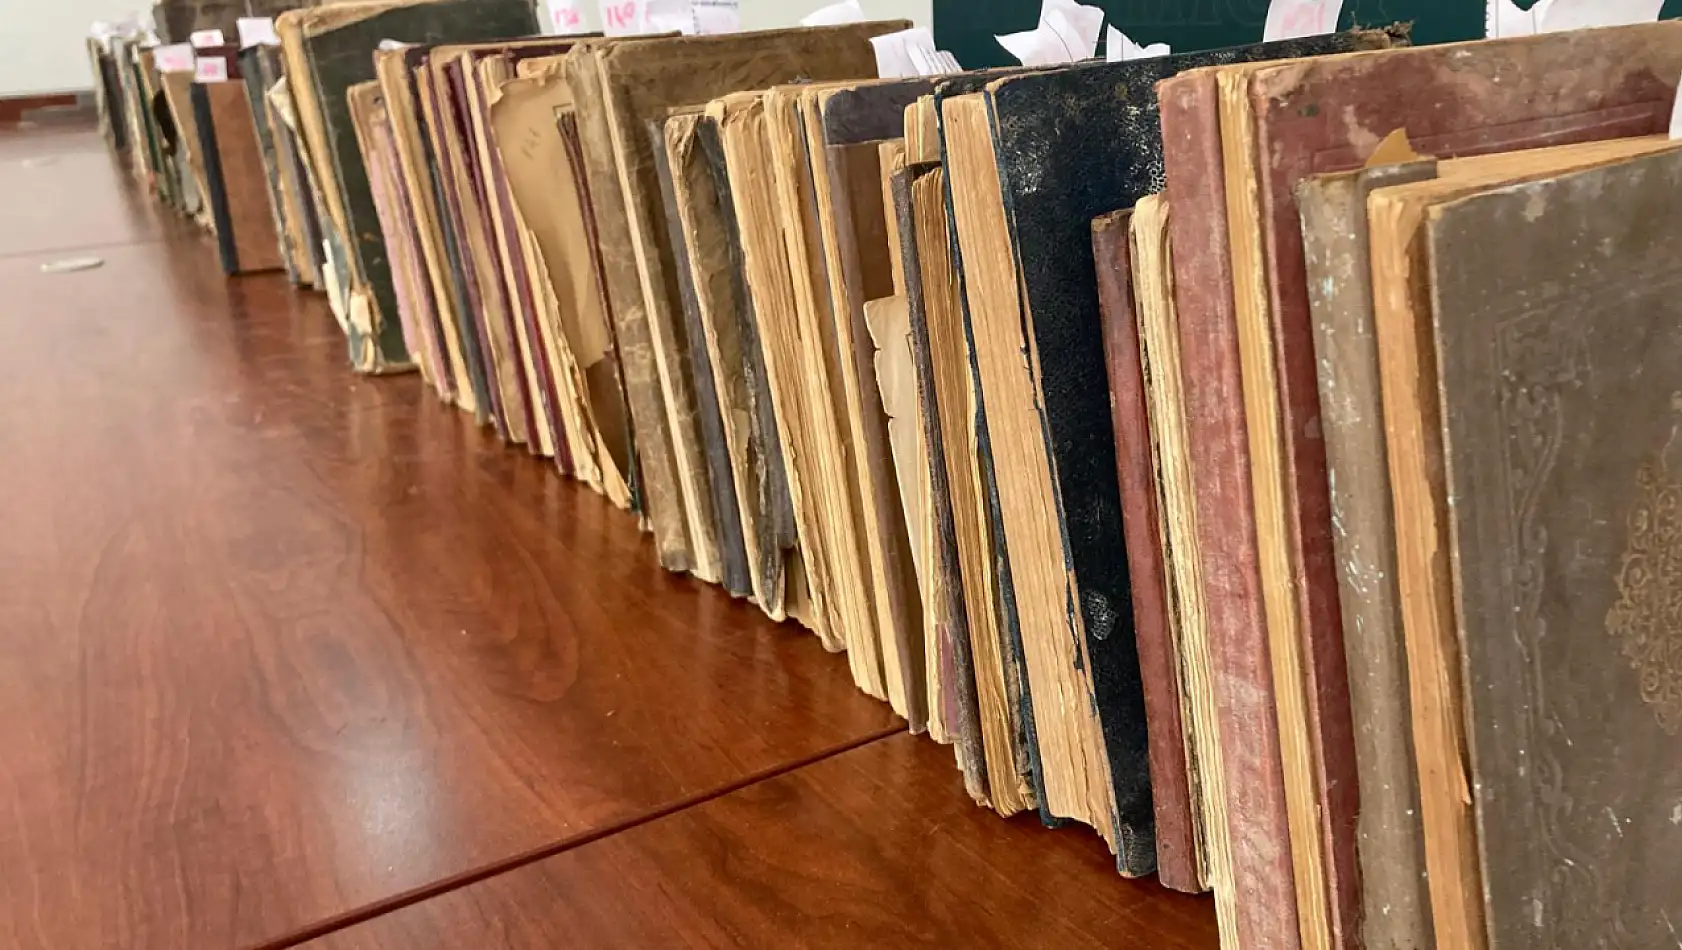 Konya Bölge Yazma Eserler Kütüphanesine 169 tarihi matbu kitap bağışlandı!